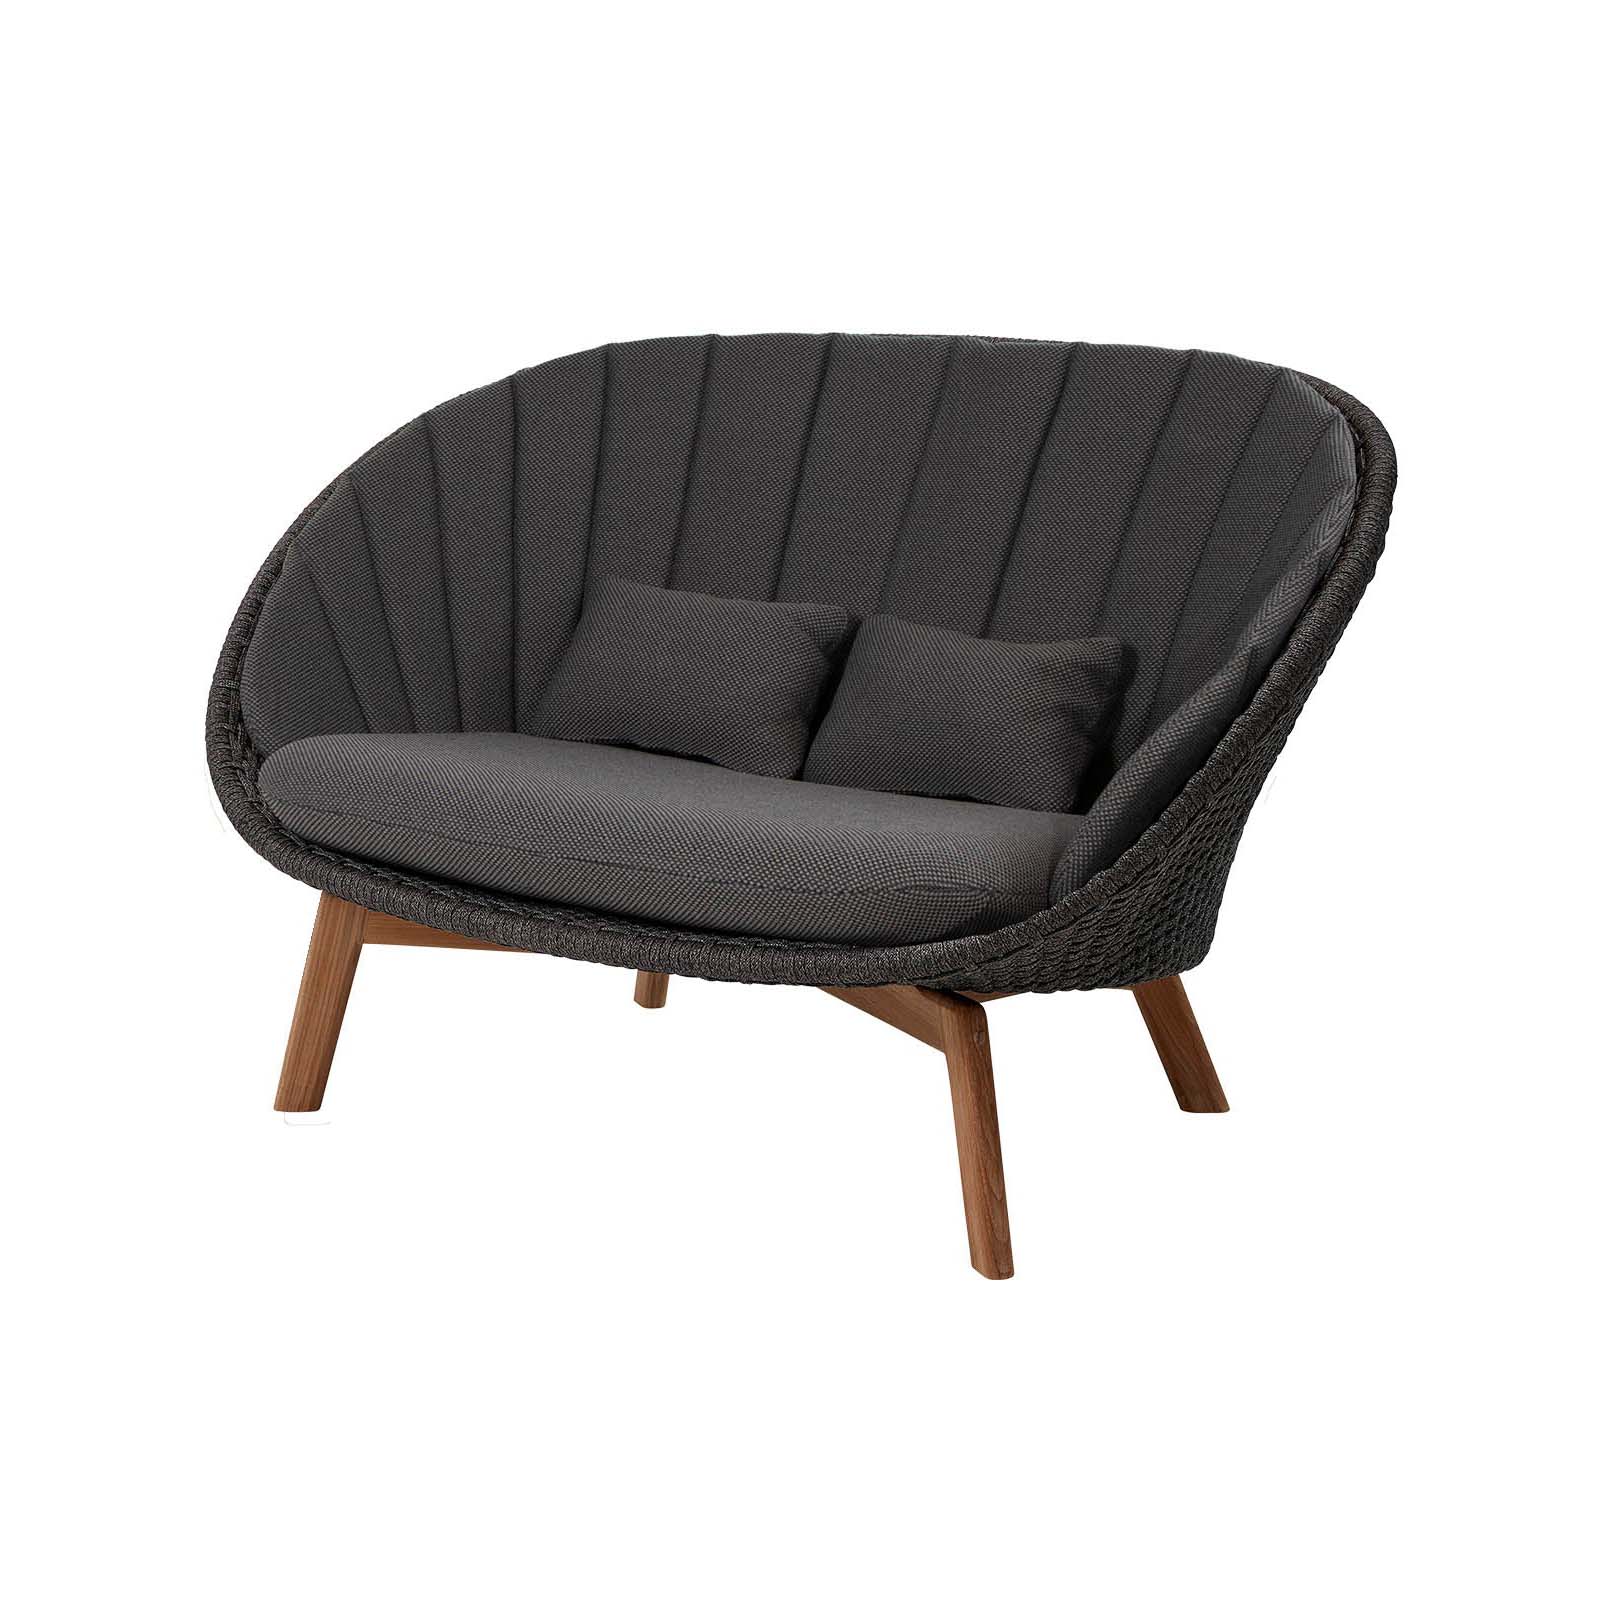 Peacock 2-Sitzer Sofa aus Cane-line Soft Rope in Dark Grey mit Kissen aus Cane-line Focus in Dark Grey